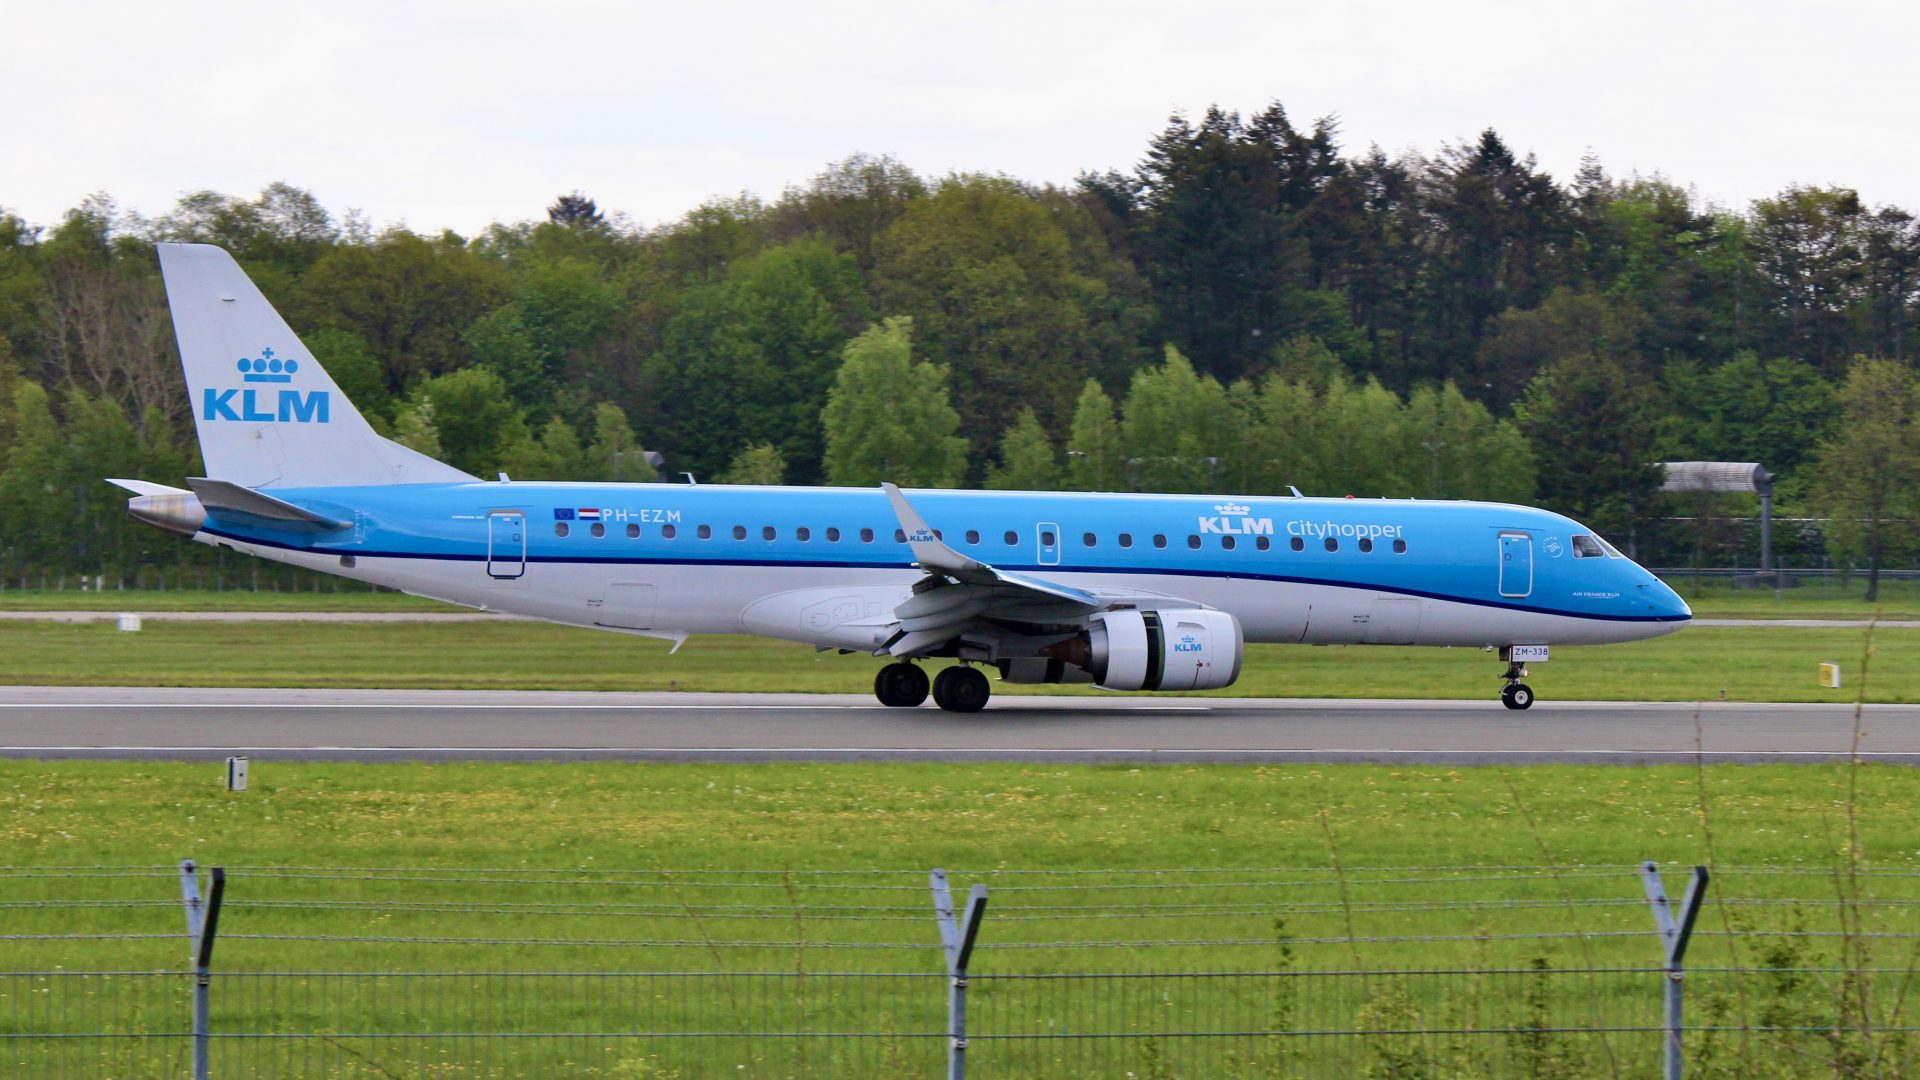 KLM Cityhopper Embraer E190